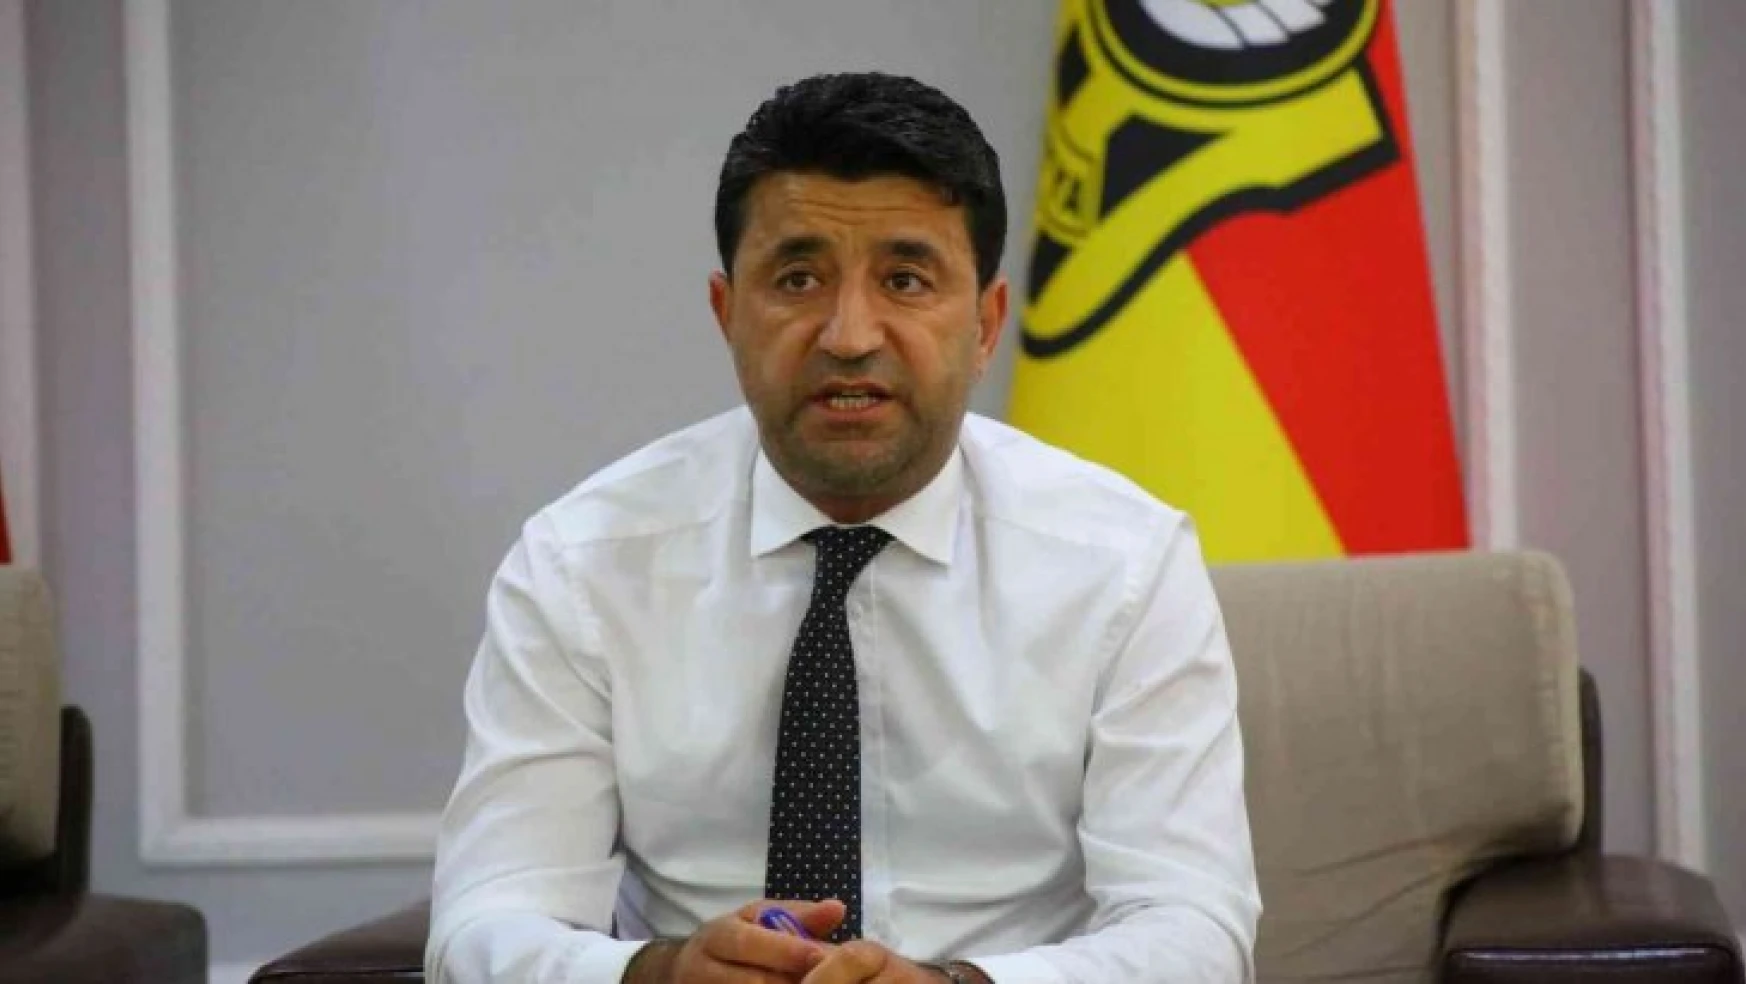 Yeni Malatyaspor'da yeni yönetim basın ile buluştu